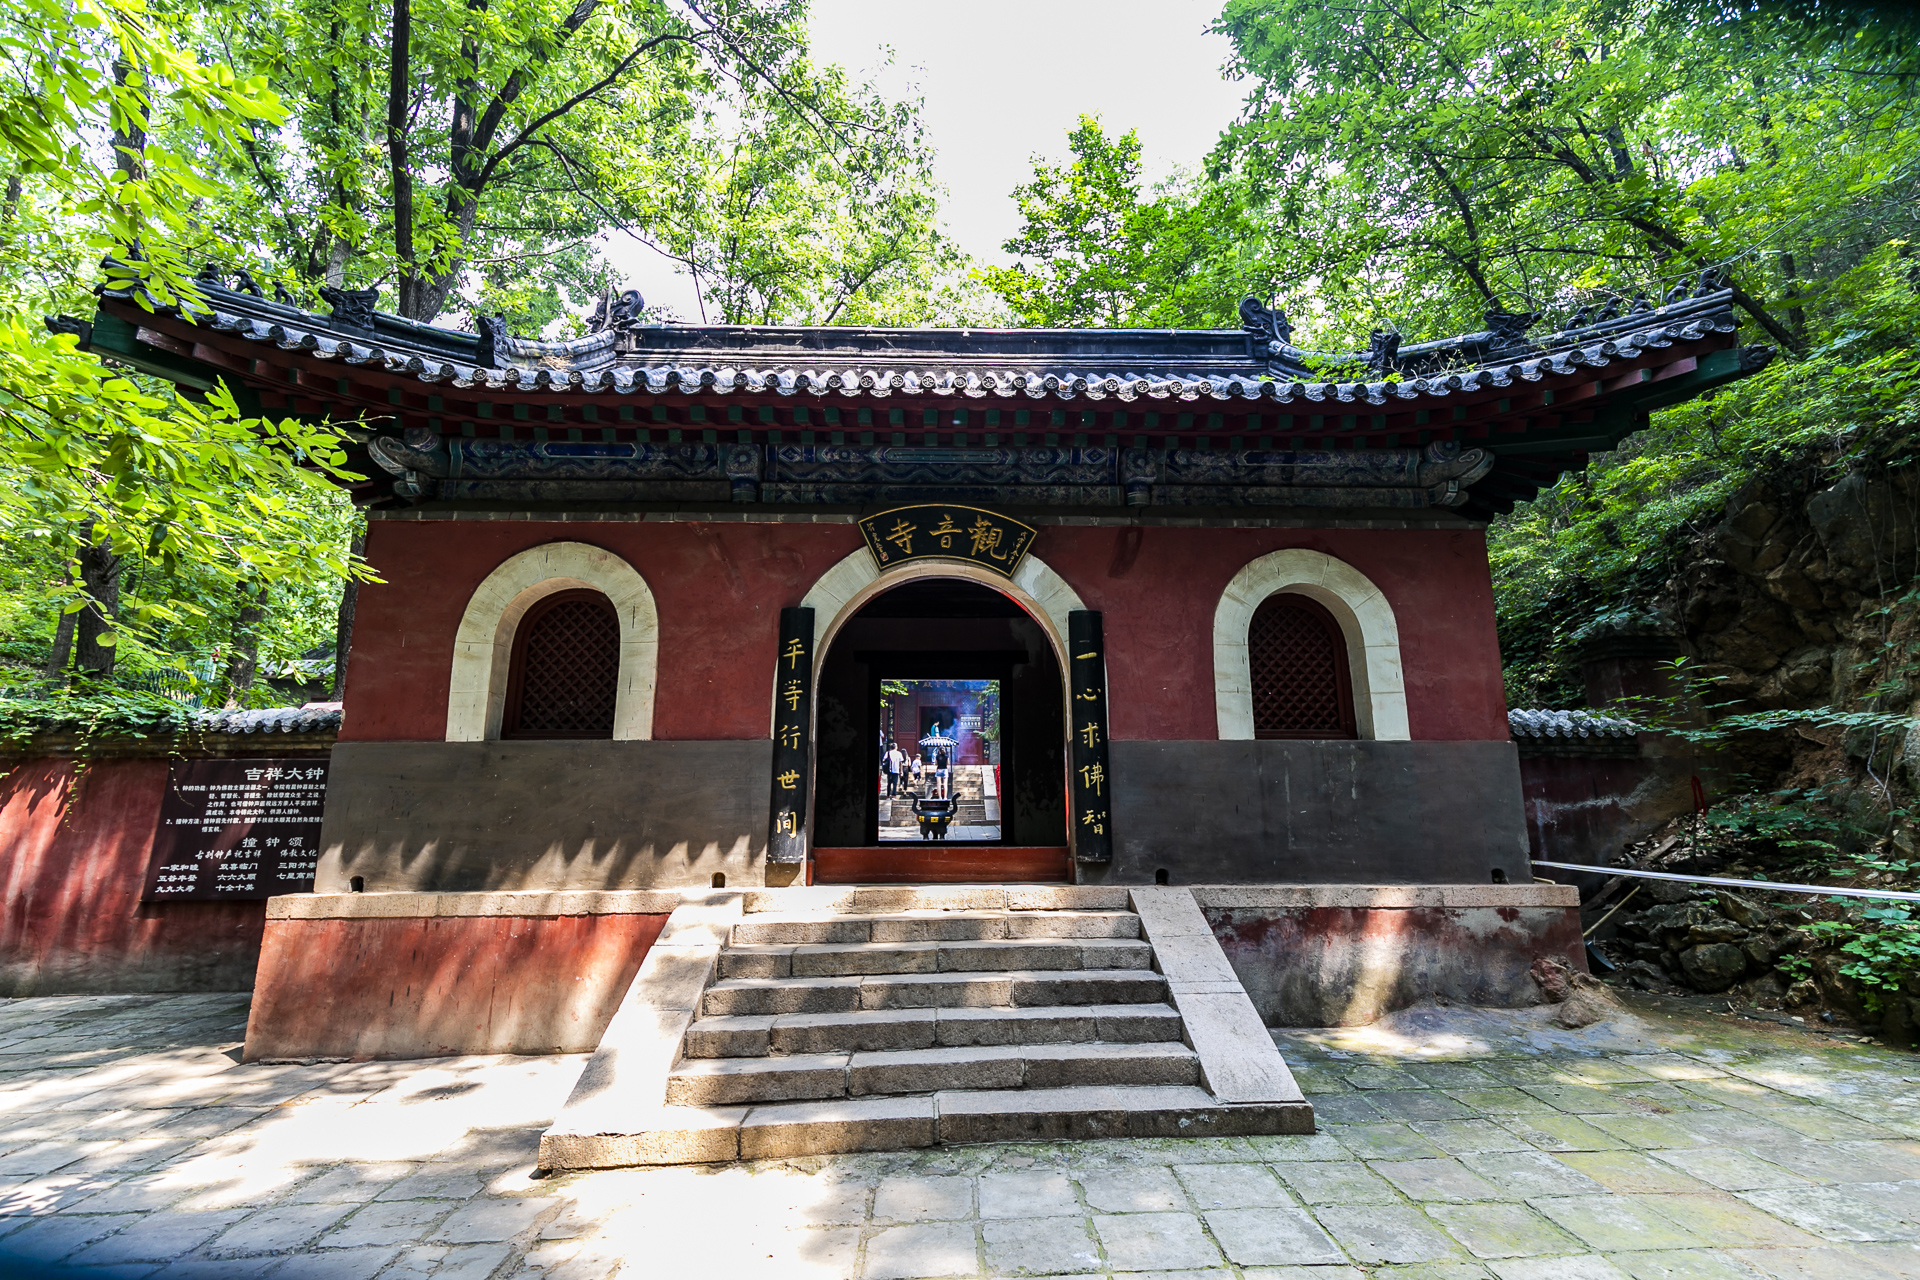 北京怀柔红螺寺内的观音寺,位于怀柔城区北侧的红螺山半山腰处,据传